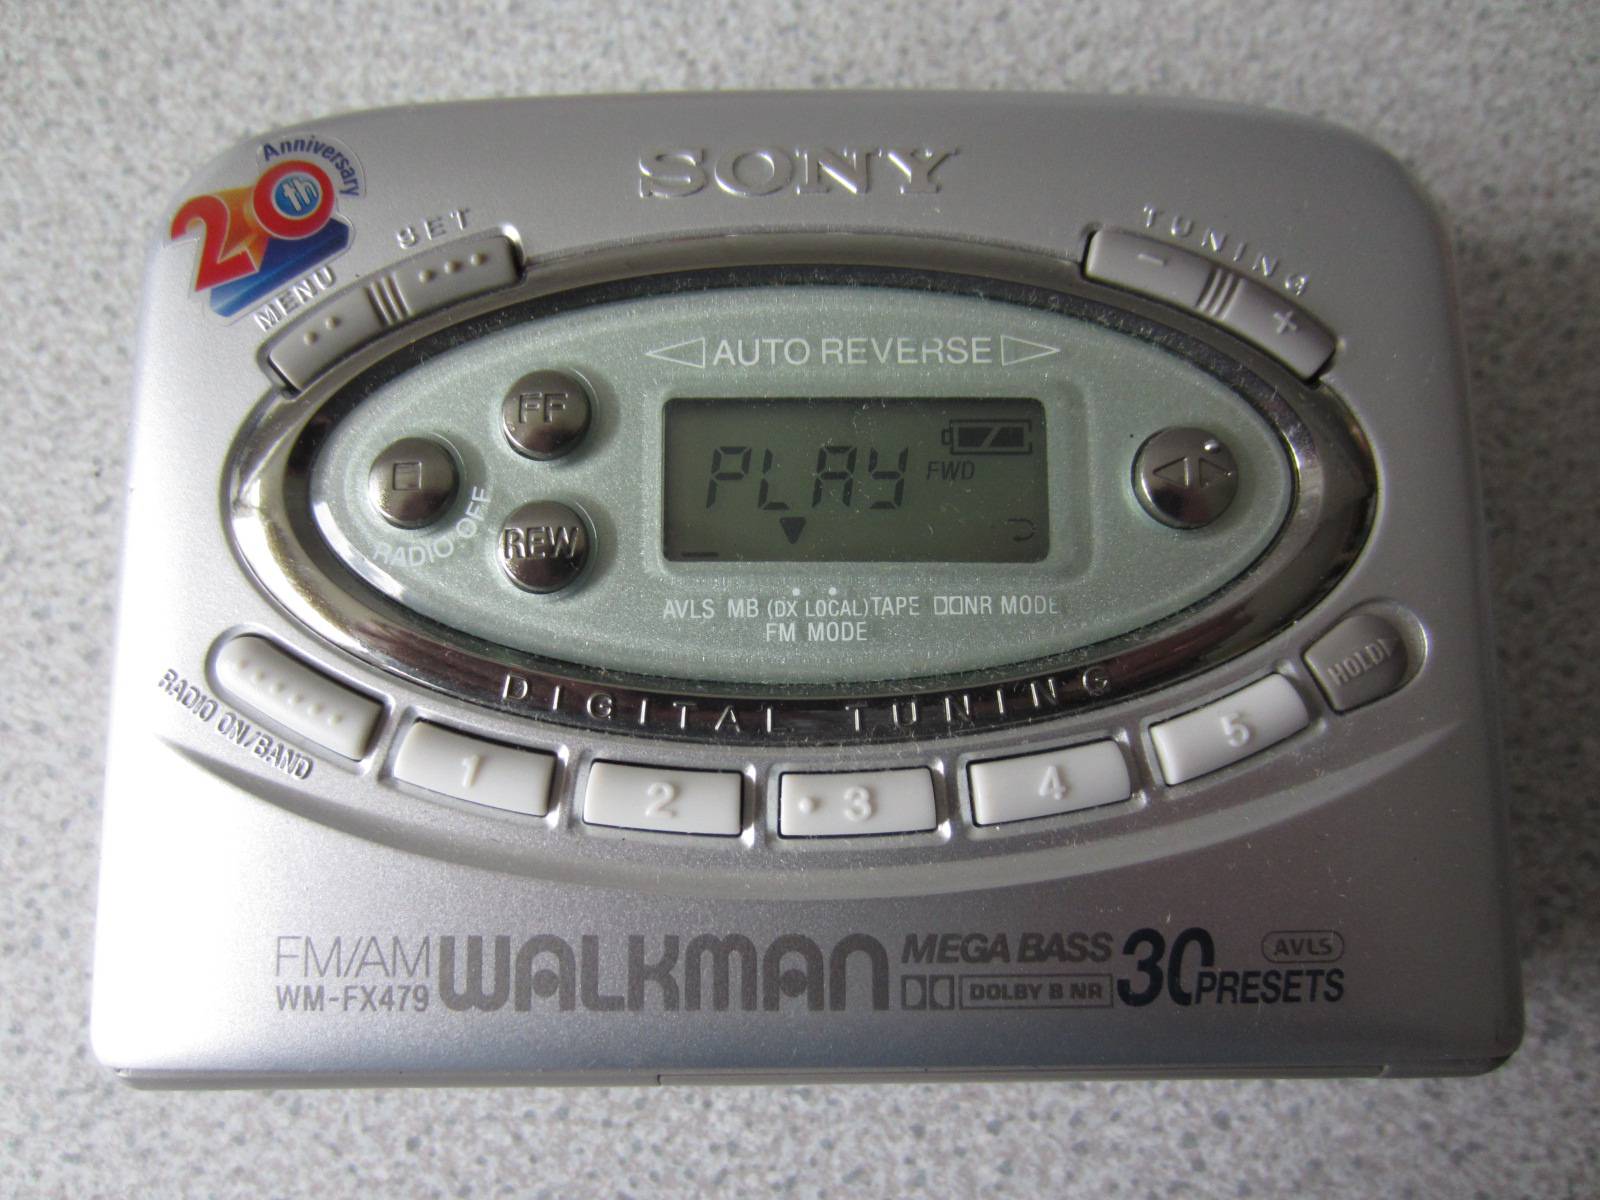 Sony WM-FX479